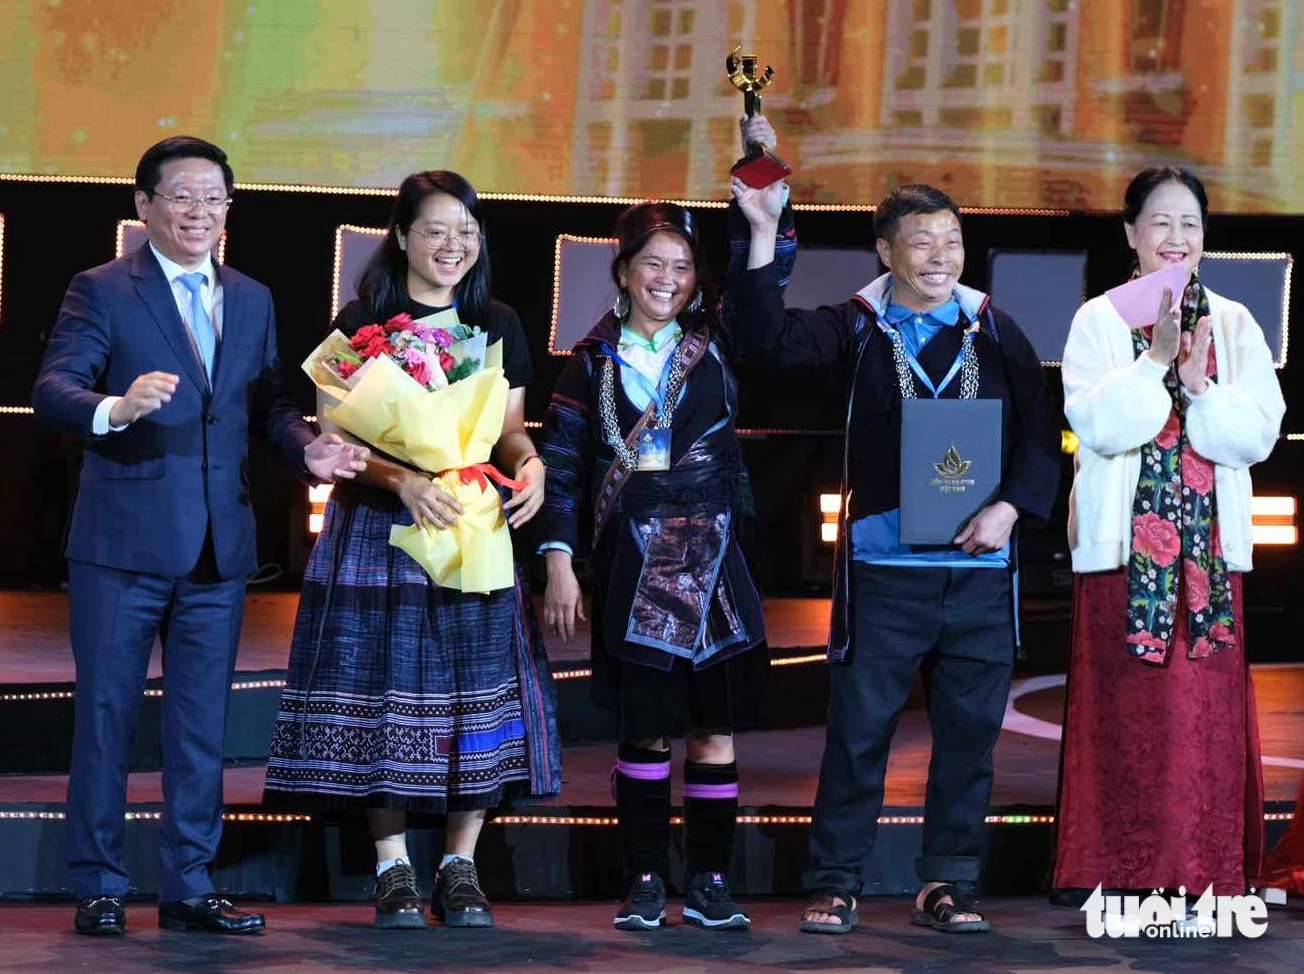 NSND Như Quỳnh và ông Trần Thanh Lâm - phó trưởng Ban Tuyên giáo Trung ương - trao giải thưởng Bông sen vàng danh giá cho 